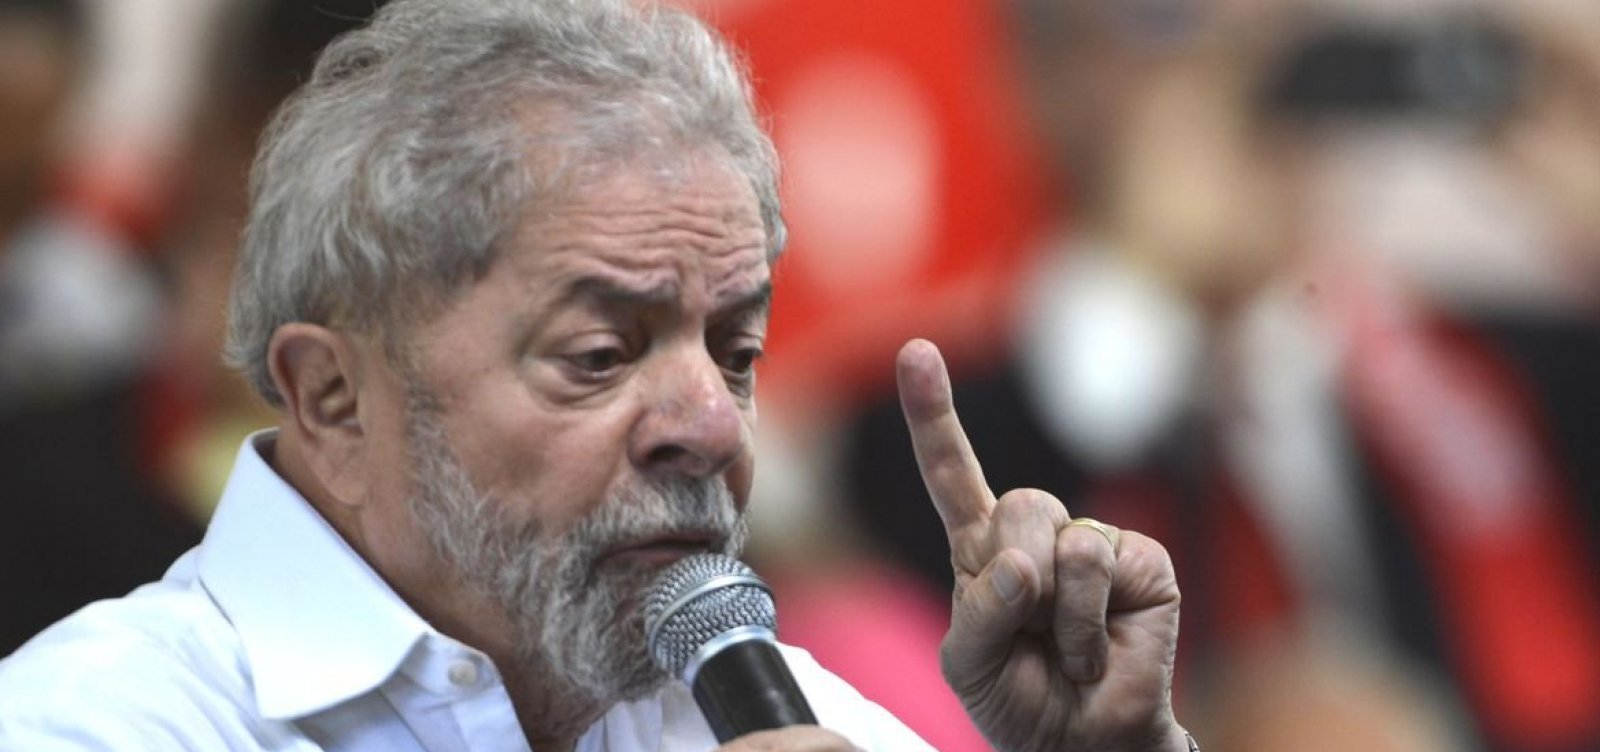 "A intolerância tirou mais uma vida", diz Lula sobre assassinato de petista por bolsonarista no MT